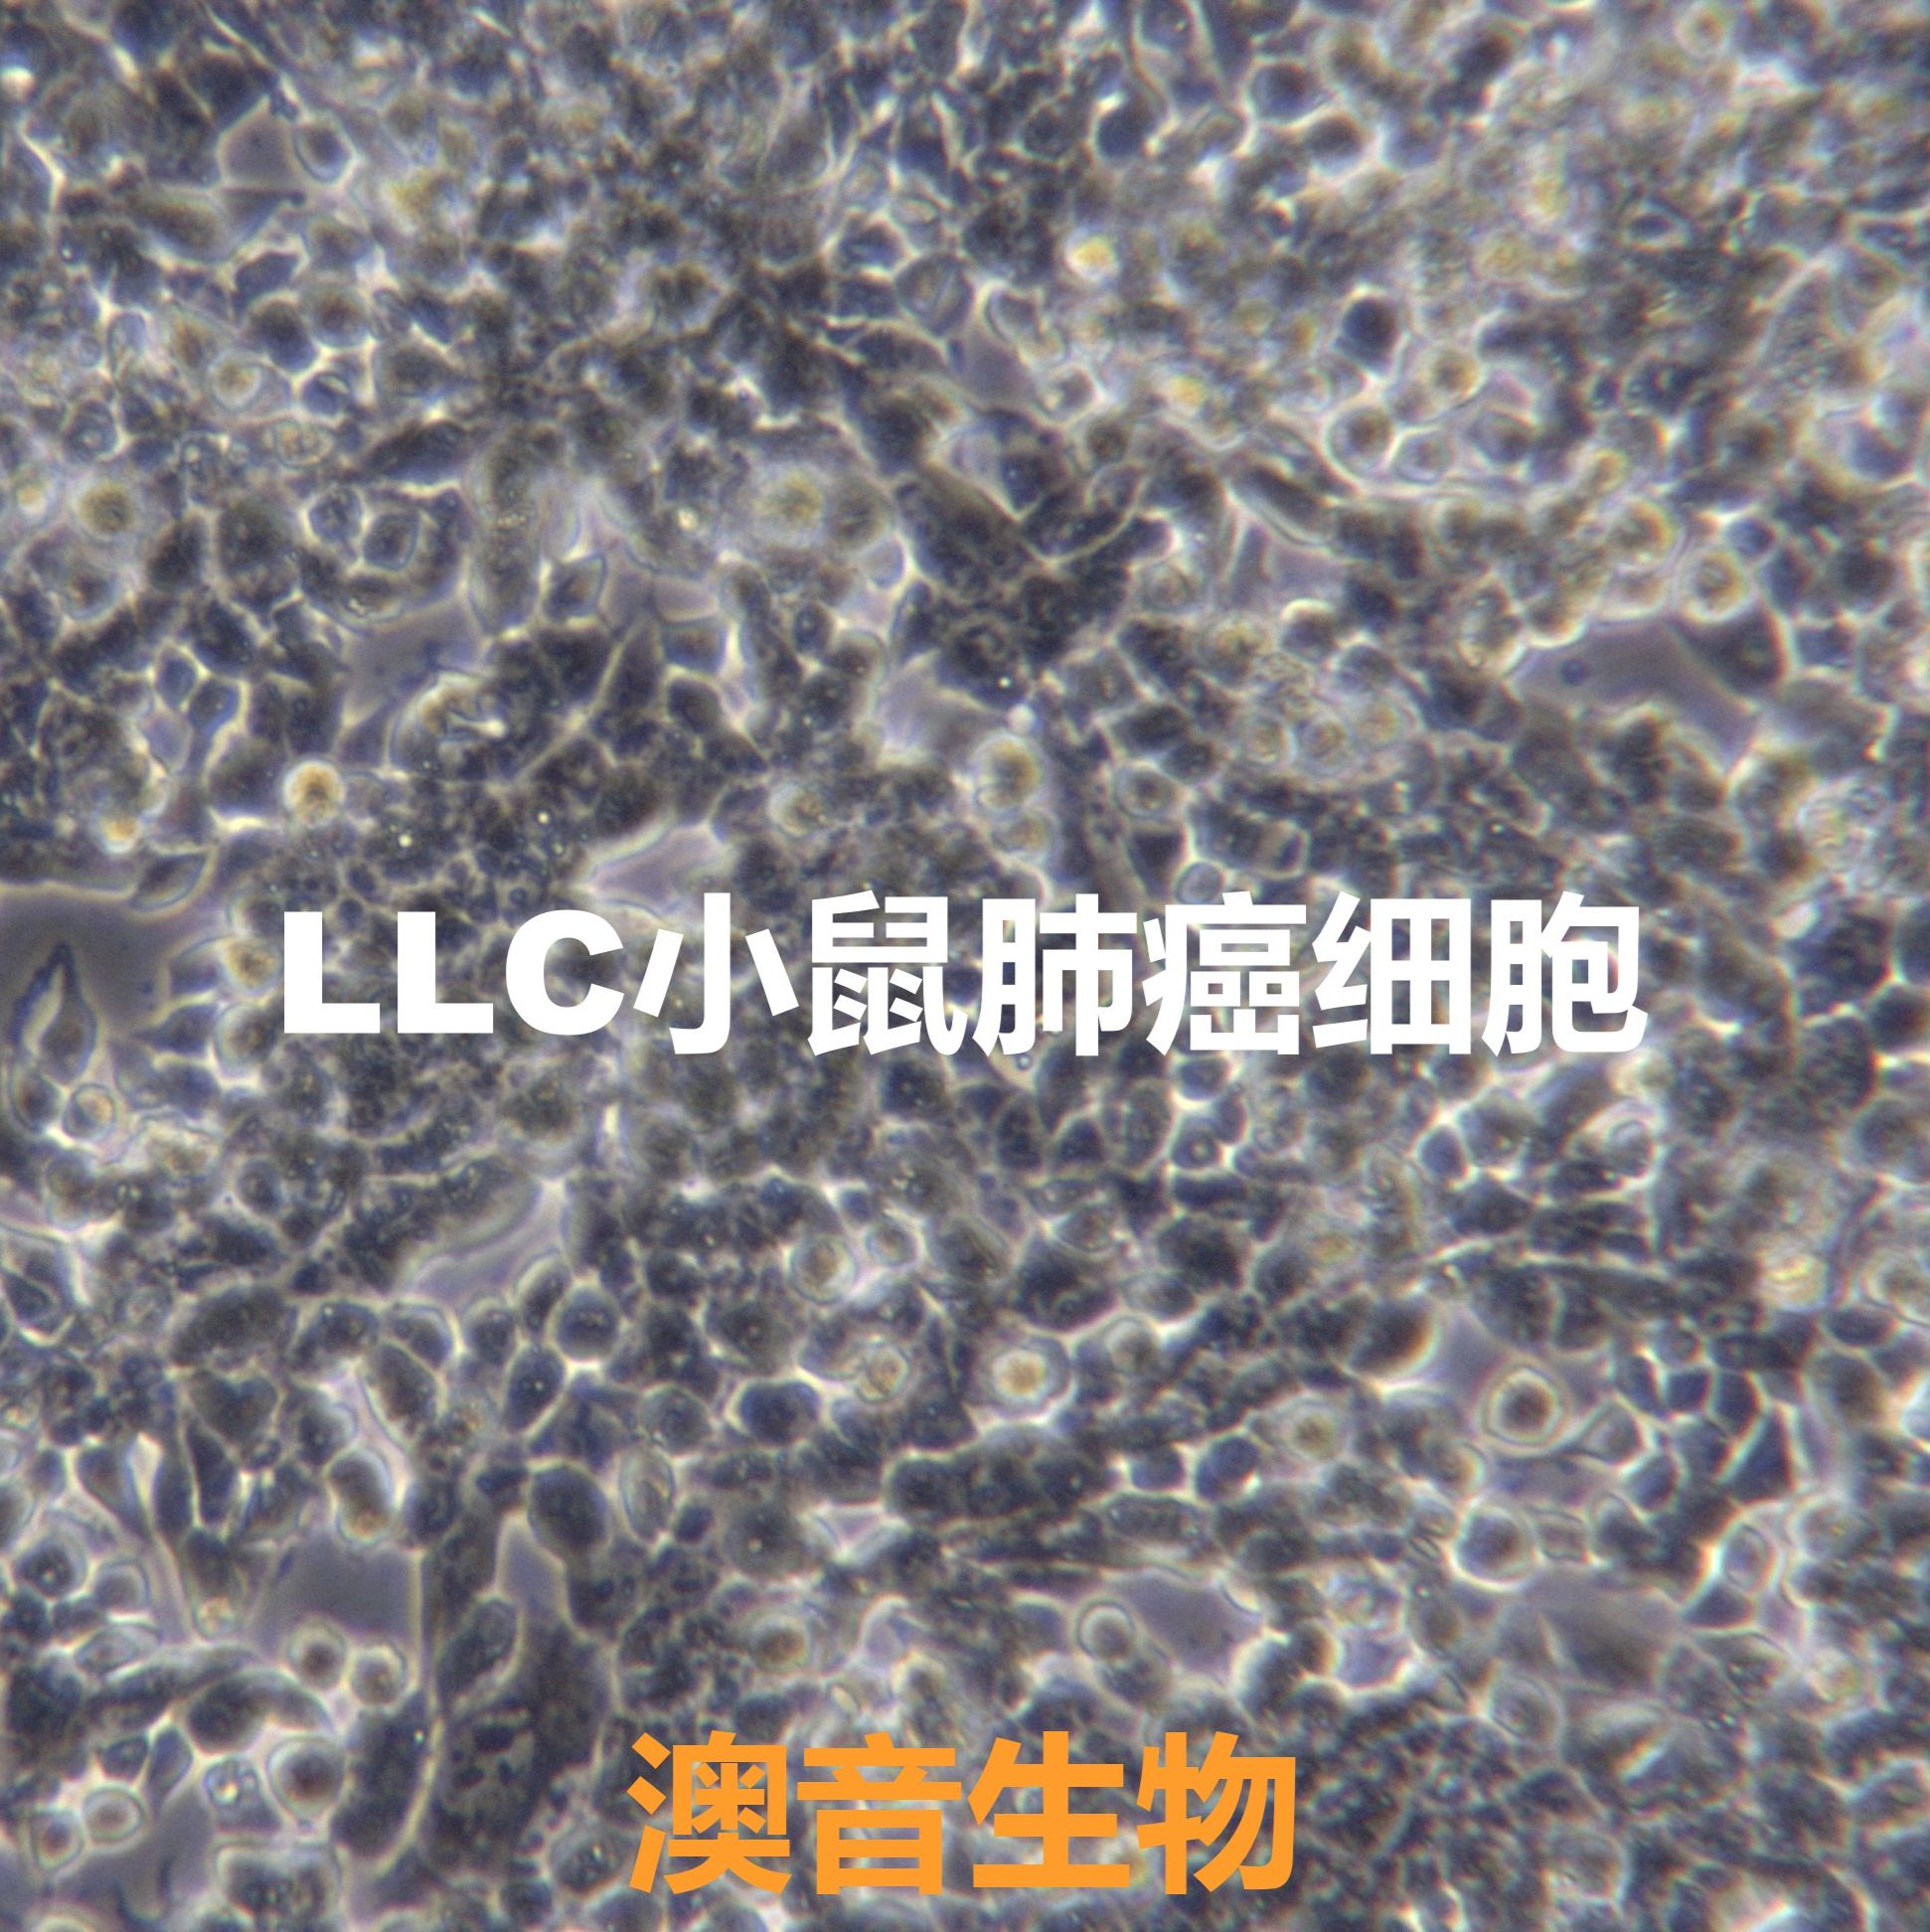 LLC【LL/2 (LLc1); LL/2(LLc1); LL/2; LL2; LLC1; Lewis lung carcinoma line 1; Lewis lung carcinoma; Lewis Lung Cancer; Lewis-Lung; Lewis Lung】小鼠肺癌细胞